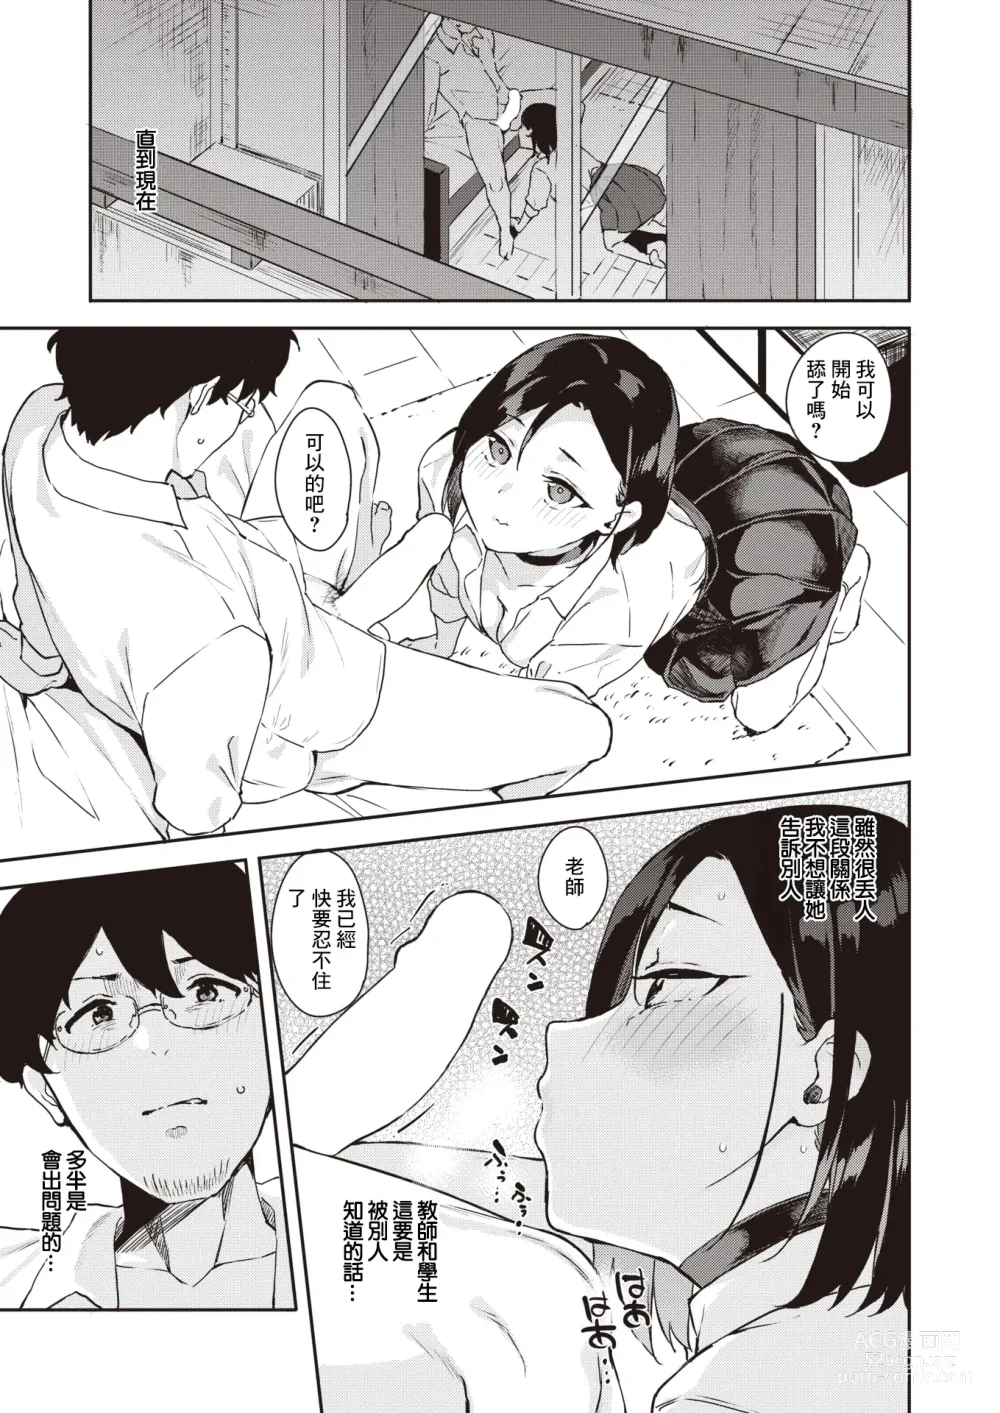 Page 6 of manga Chuuken Kanojo - Hame hame waw wan